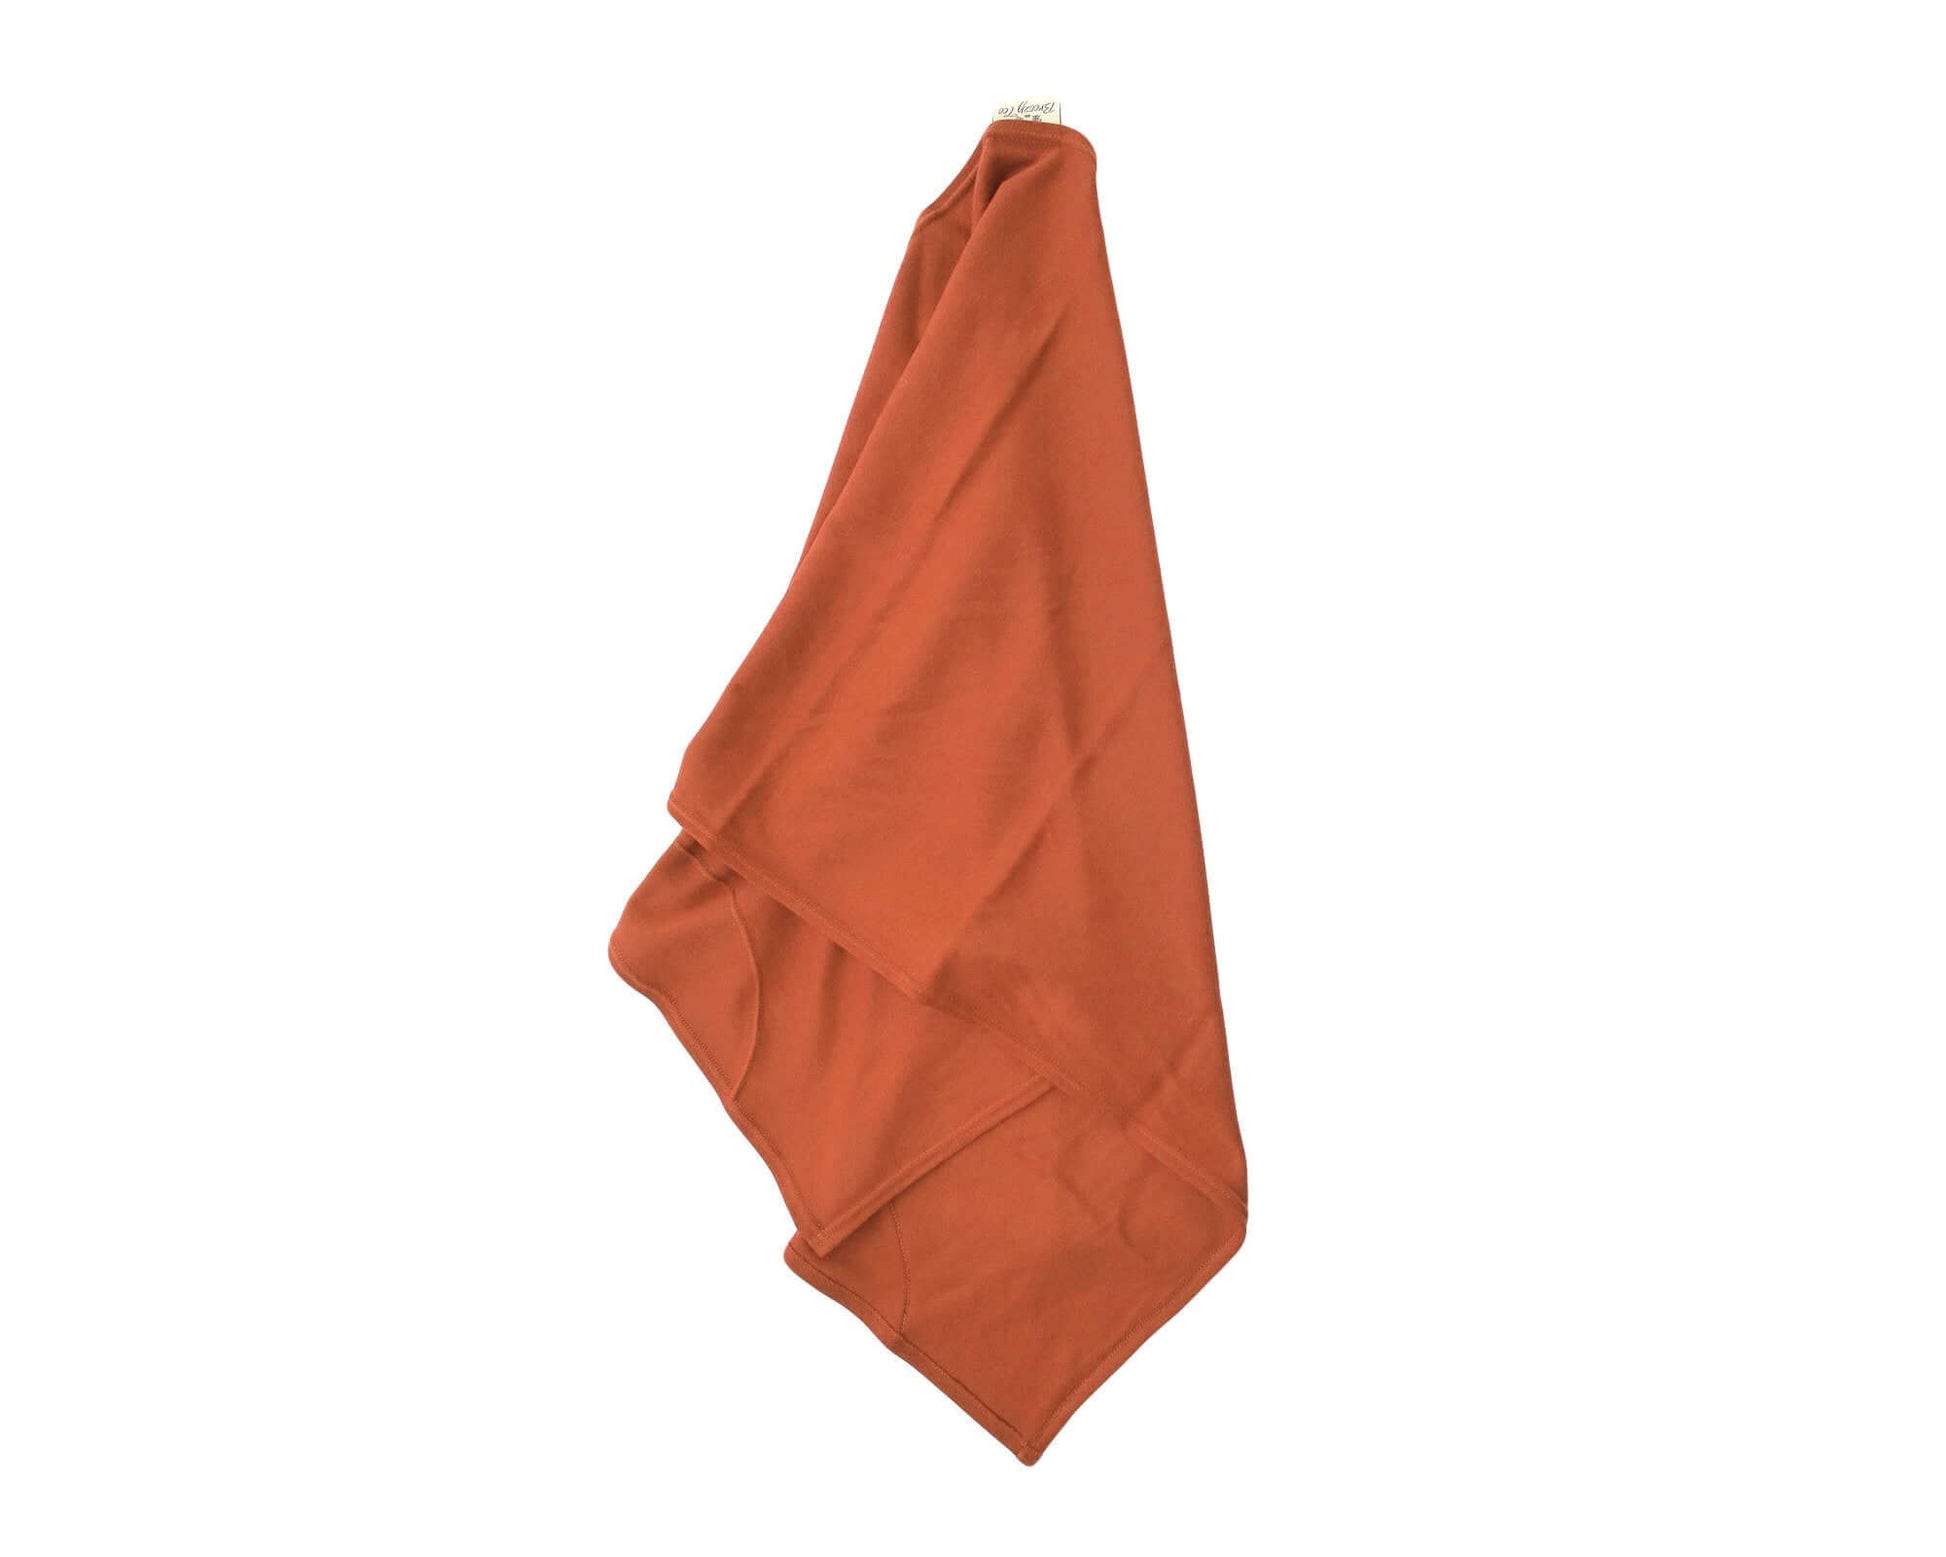 Burnt Orange T-shirt Hair Towel Wrap Full Curly Hair